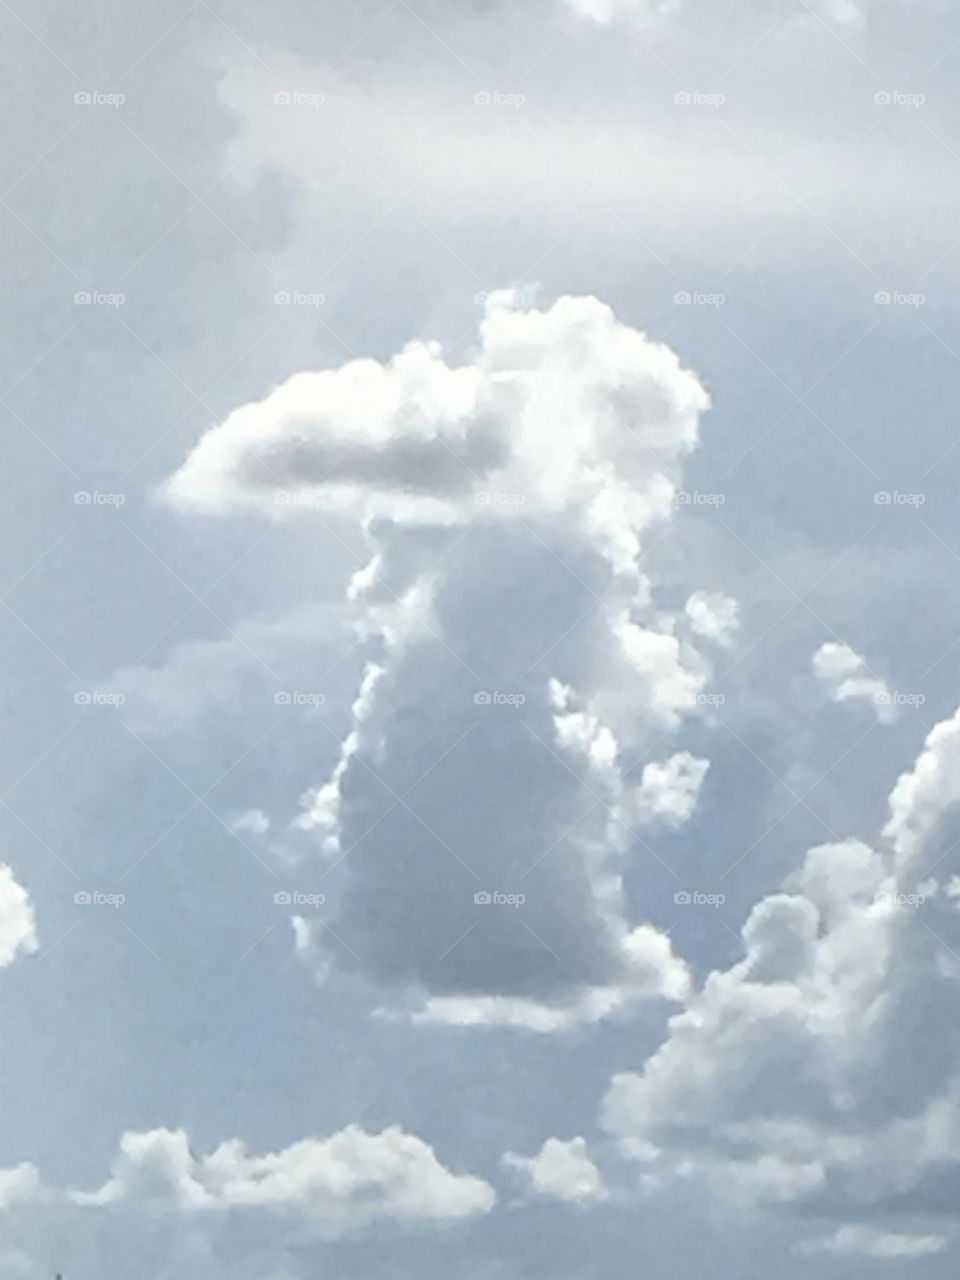 Is that cloud a bird?